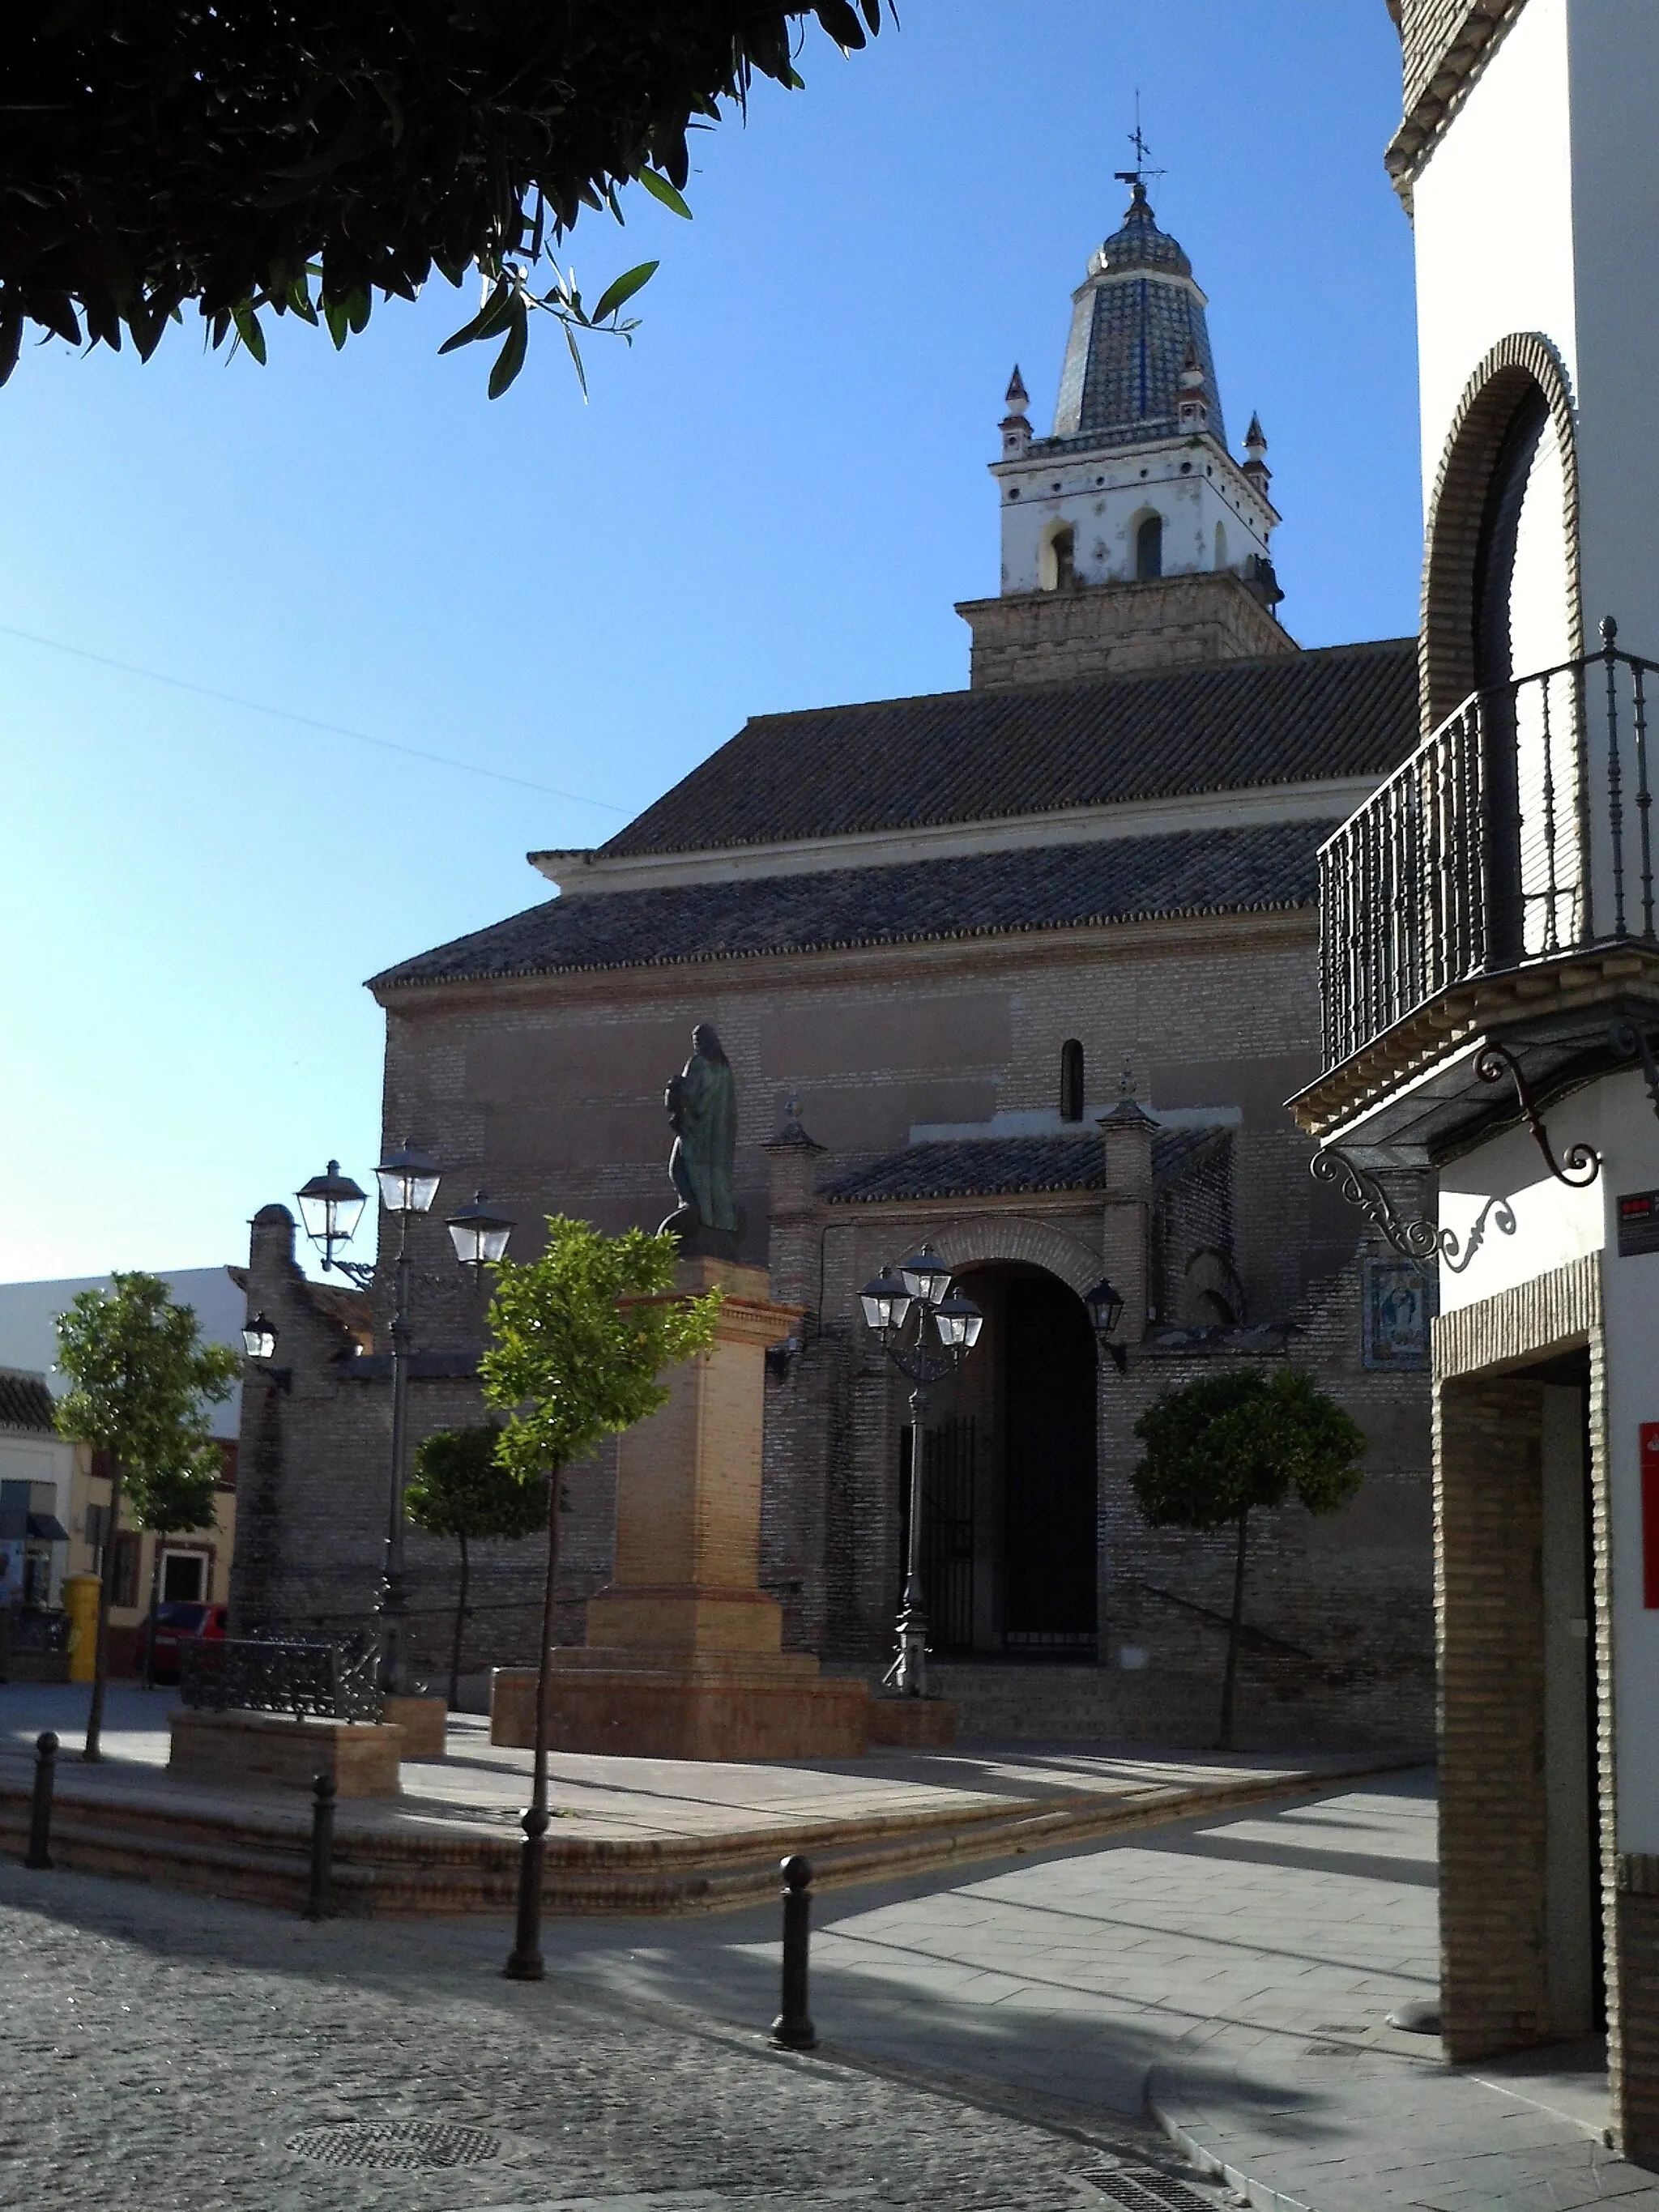 Photo showing: Vista de la plaza de España de Salteras, con la iglesia parroquial de N. Sra. de la Oliva y el monumento al Sagrado Corazón